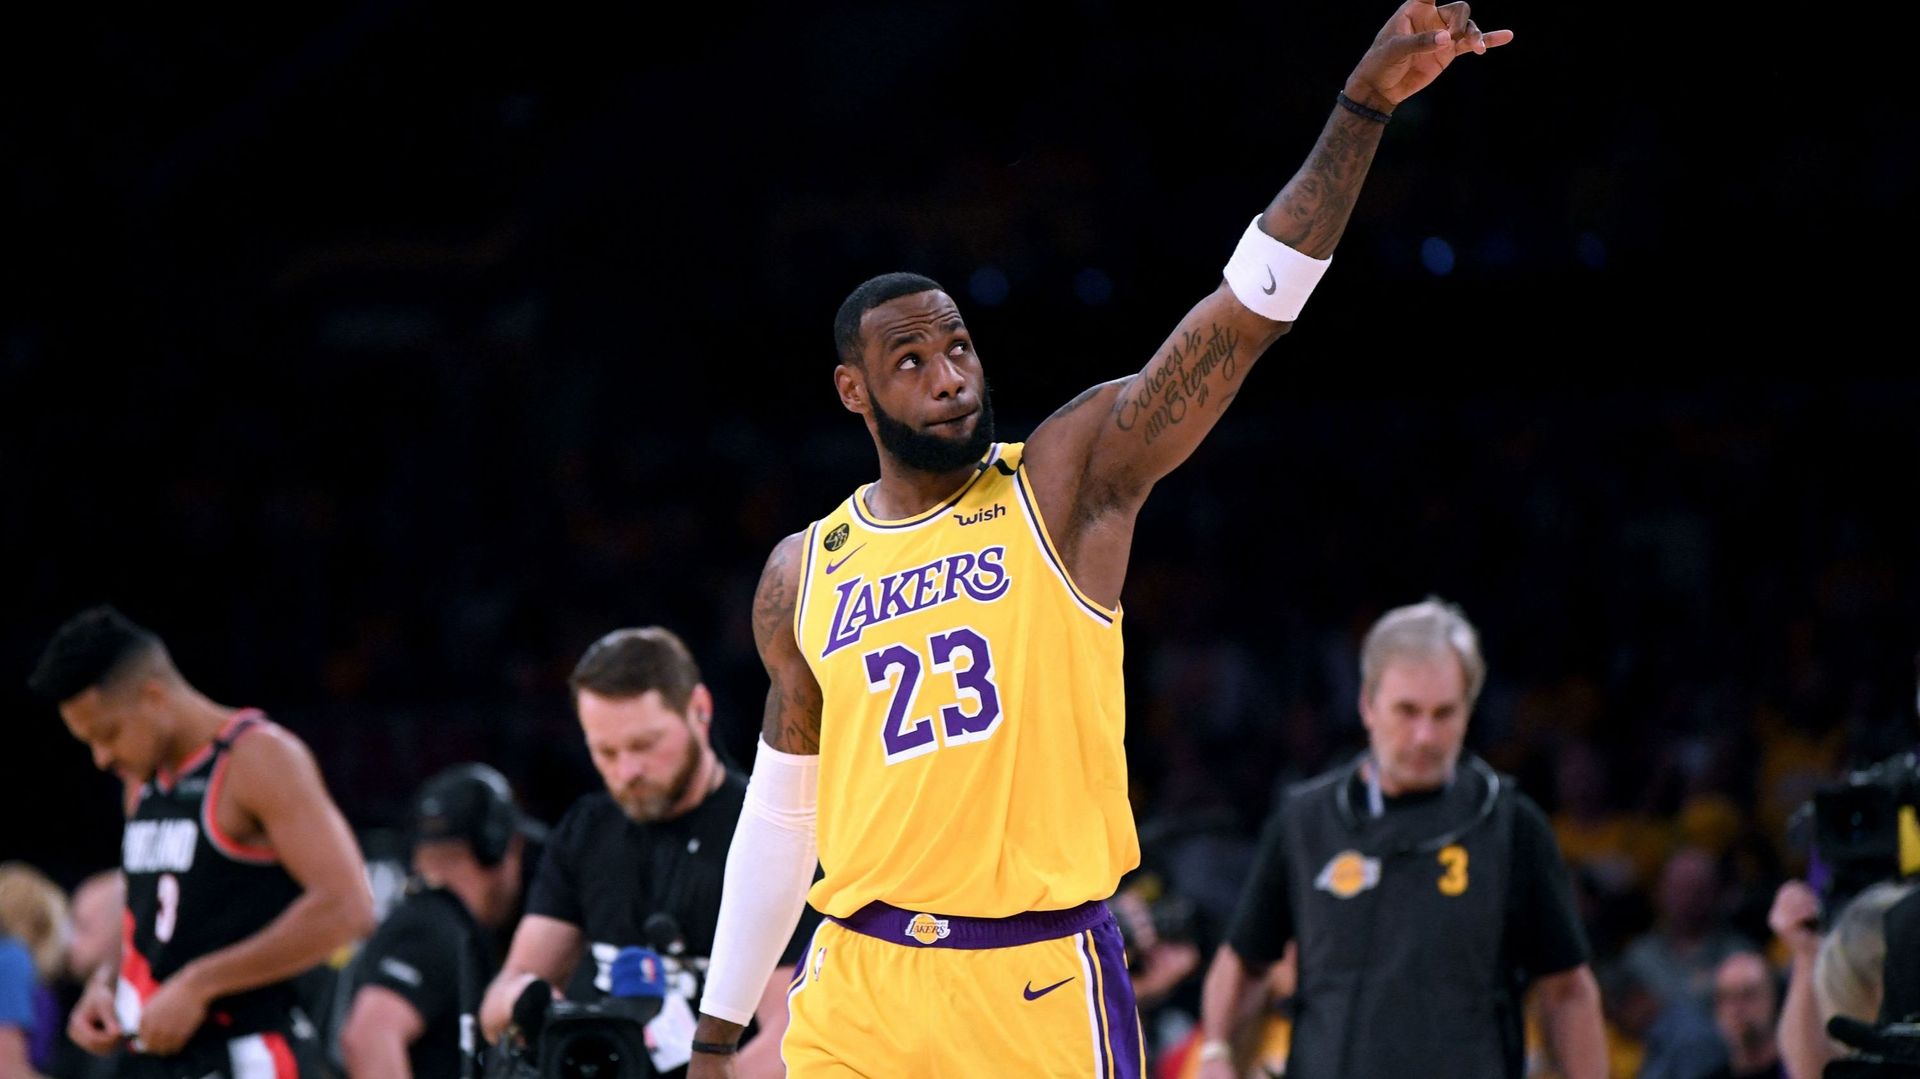 Les Lakers de Los Angeles ont officialisé jeudi la prolongation pour deux années du contrat LeBron James, soit jusqu’en 2025, confirmant une information divulguée par plusieurs médias américains la veille.